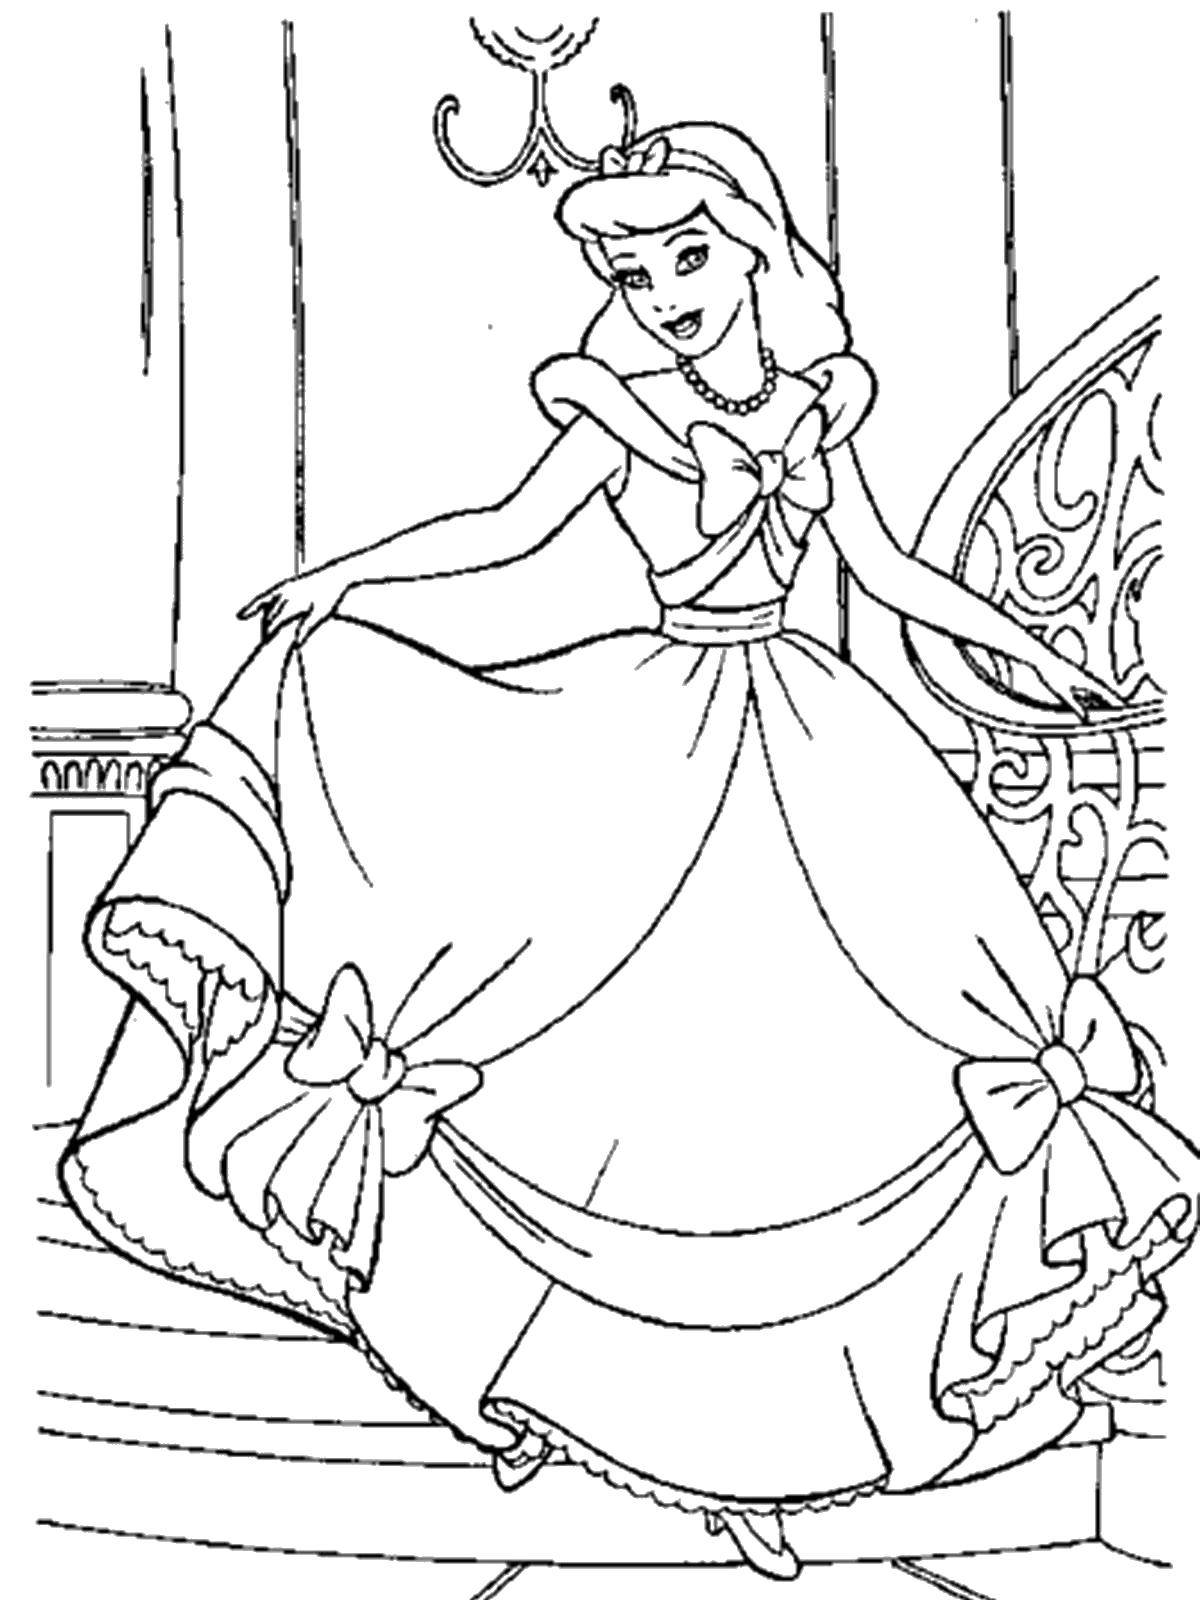 Coloring Cinderella at the ball. Category Cinderella. Tags:  Disney, Cinderella.